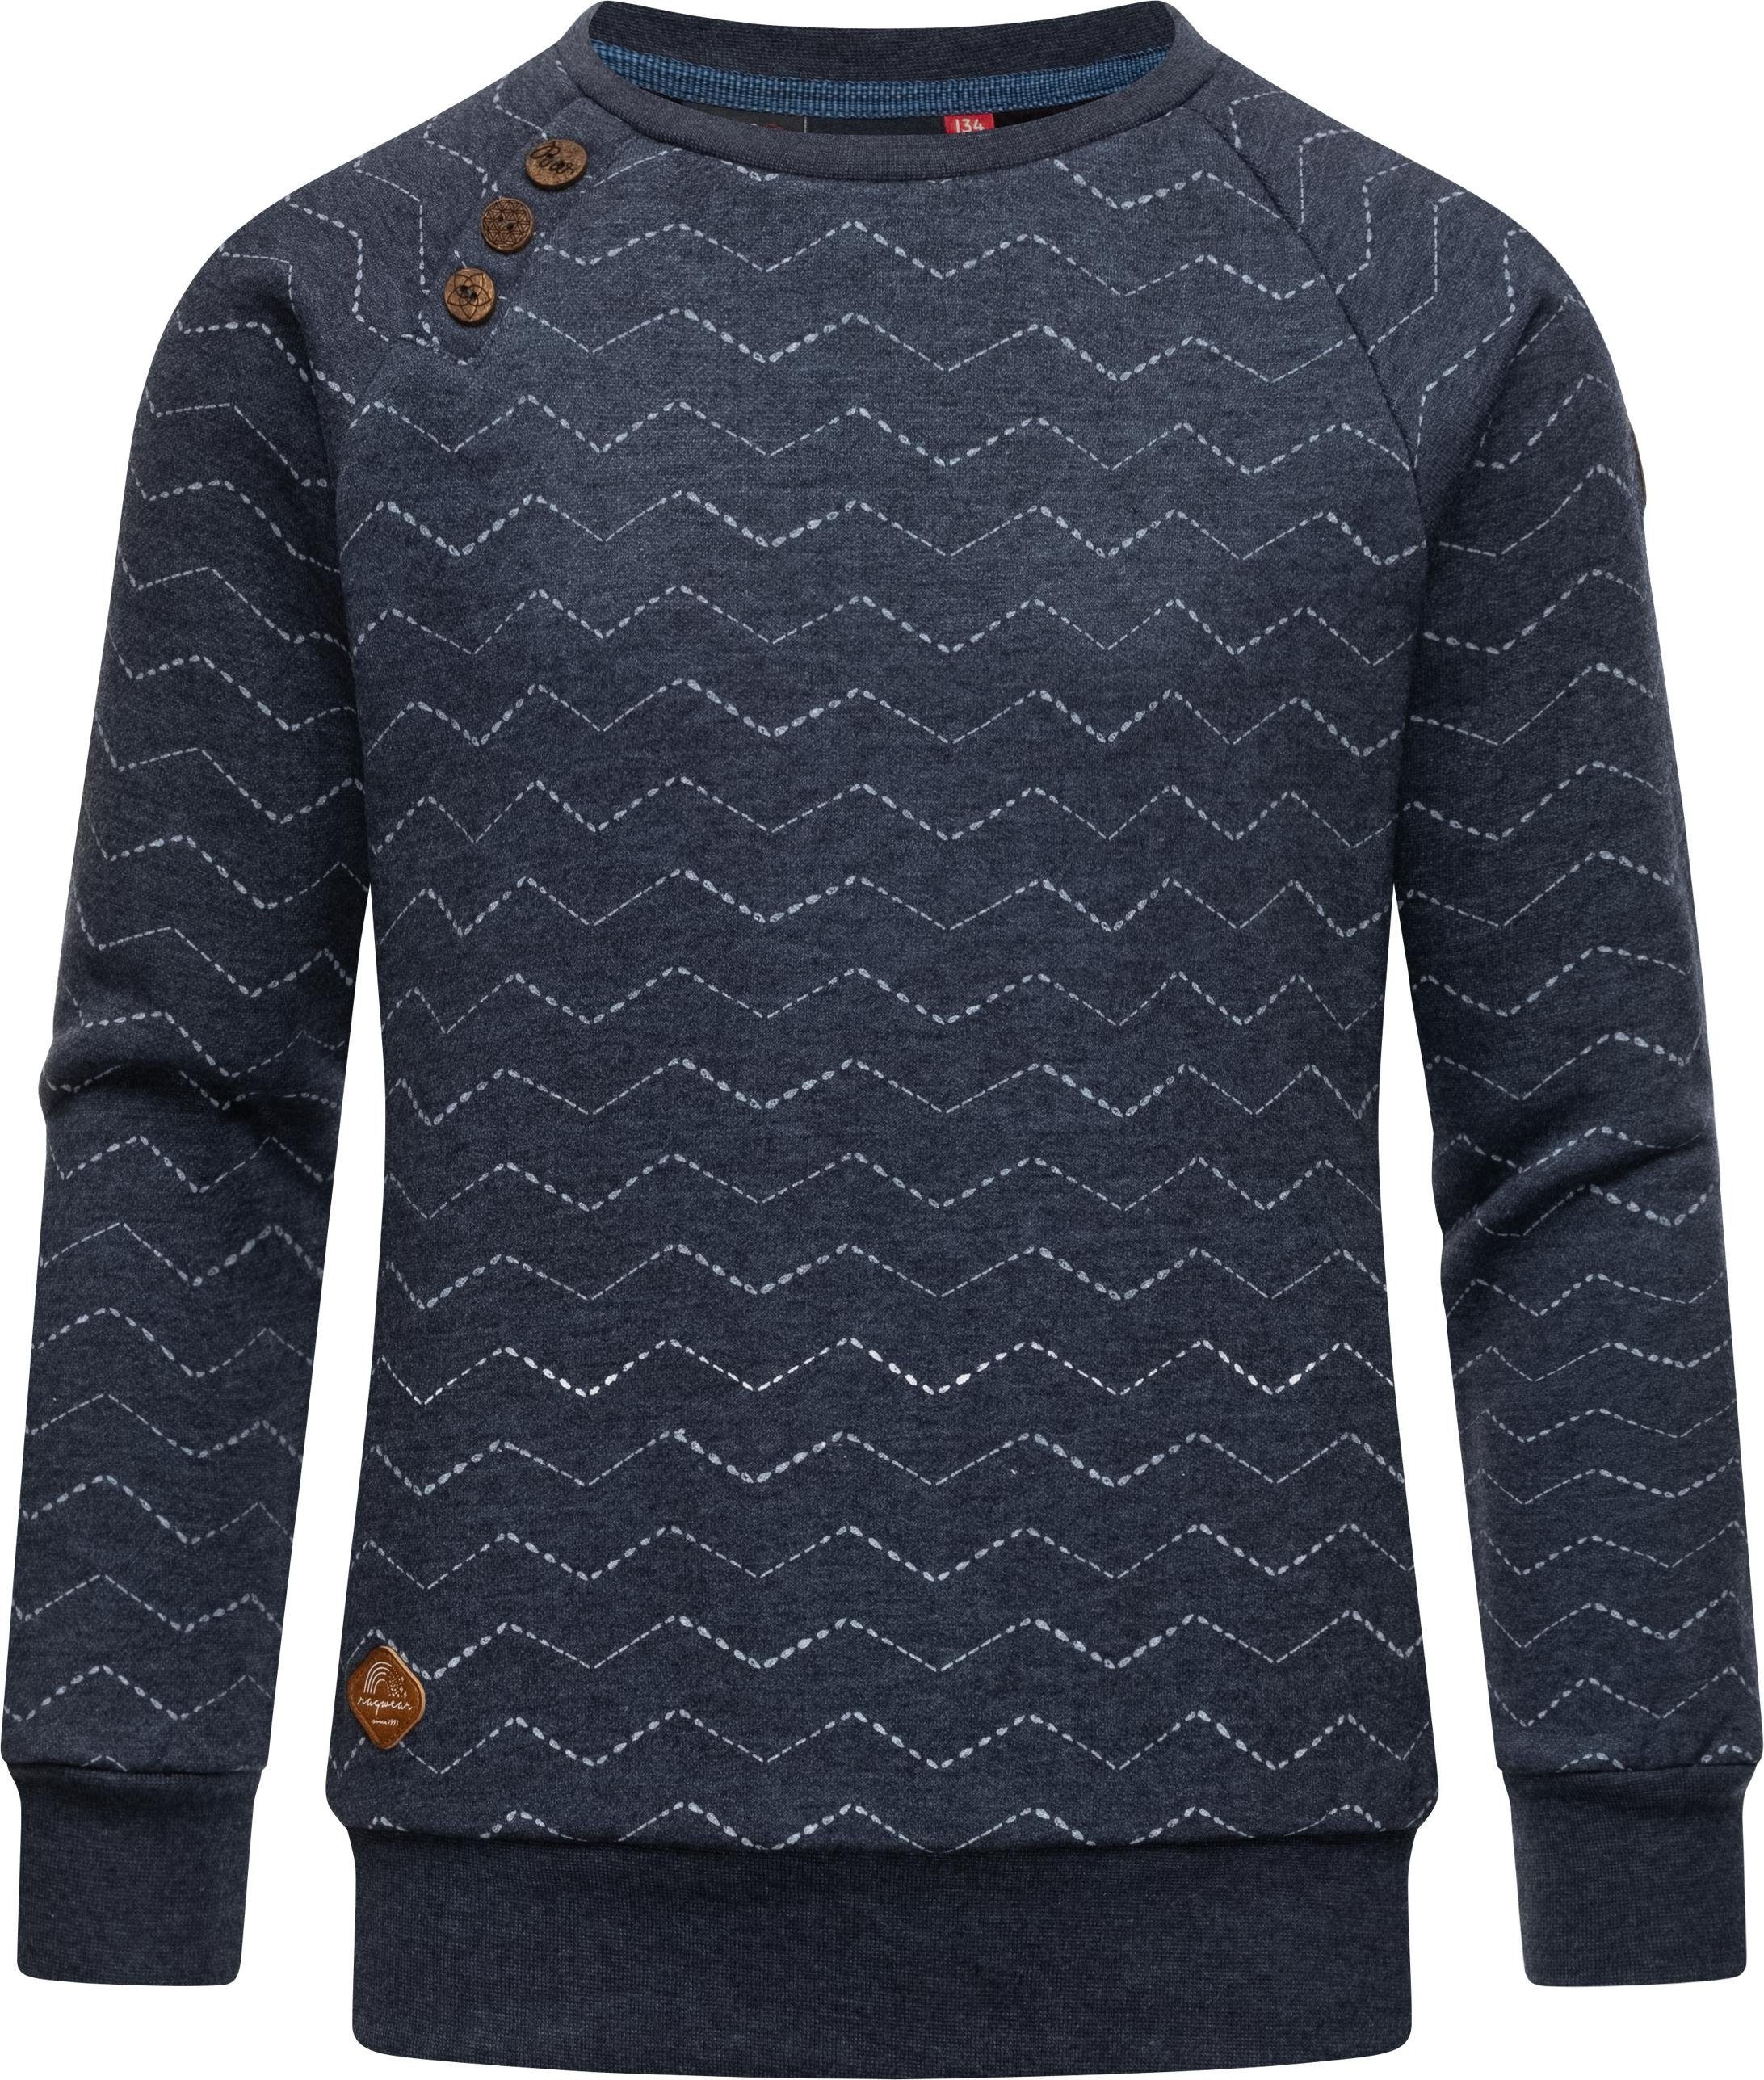 Ragwear Sweater Darinka Zig Zag Mädchen Sweatshirt stylisches mit navy Zick-Zack-Muster